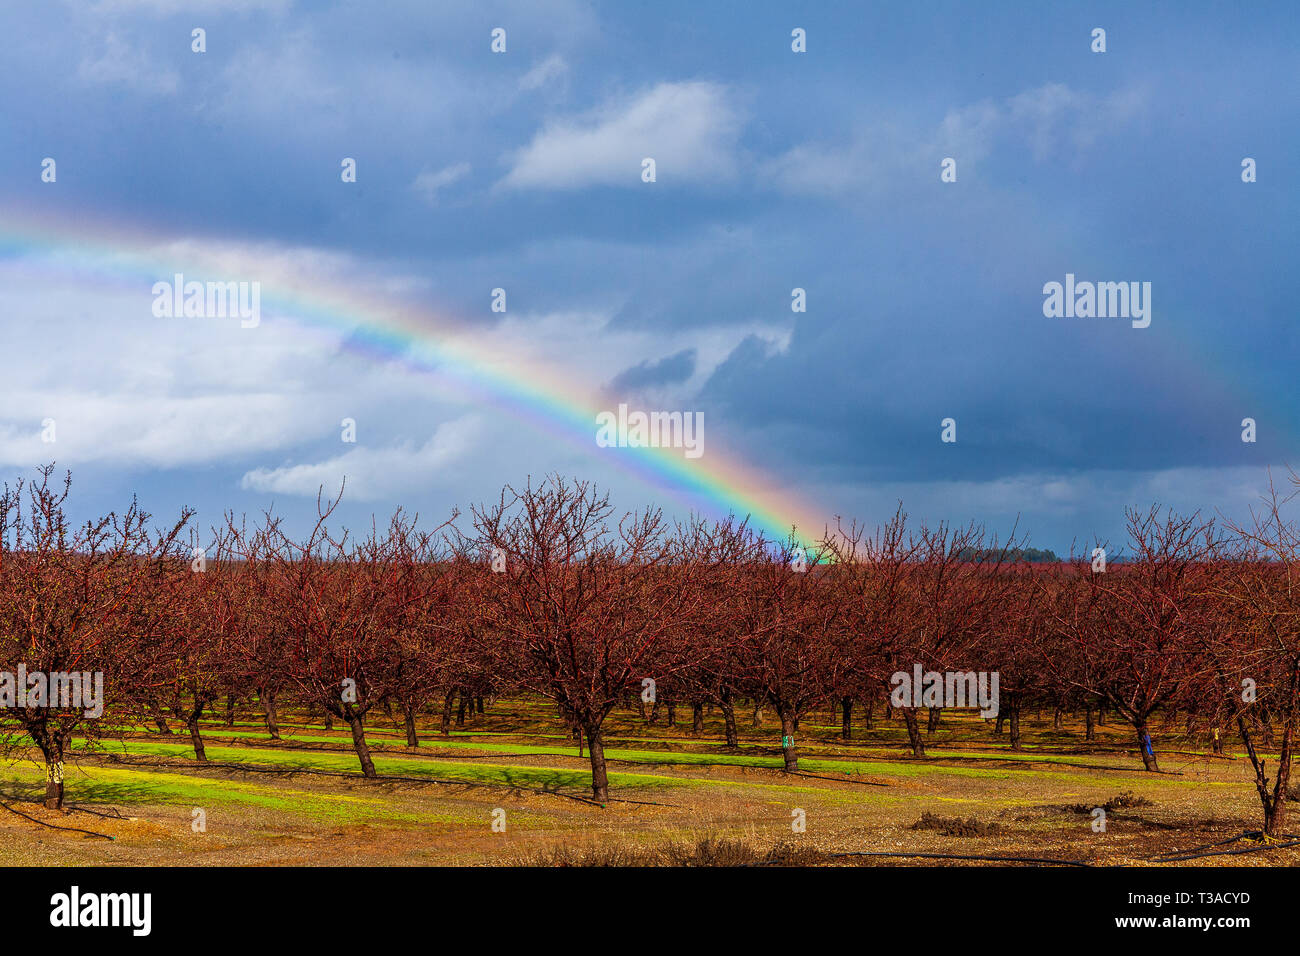 California almendras son la olla de oro al final del arco iris Foto de stock